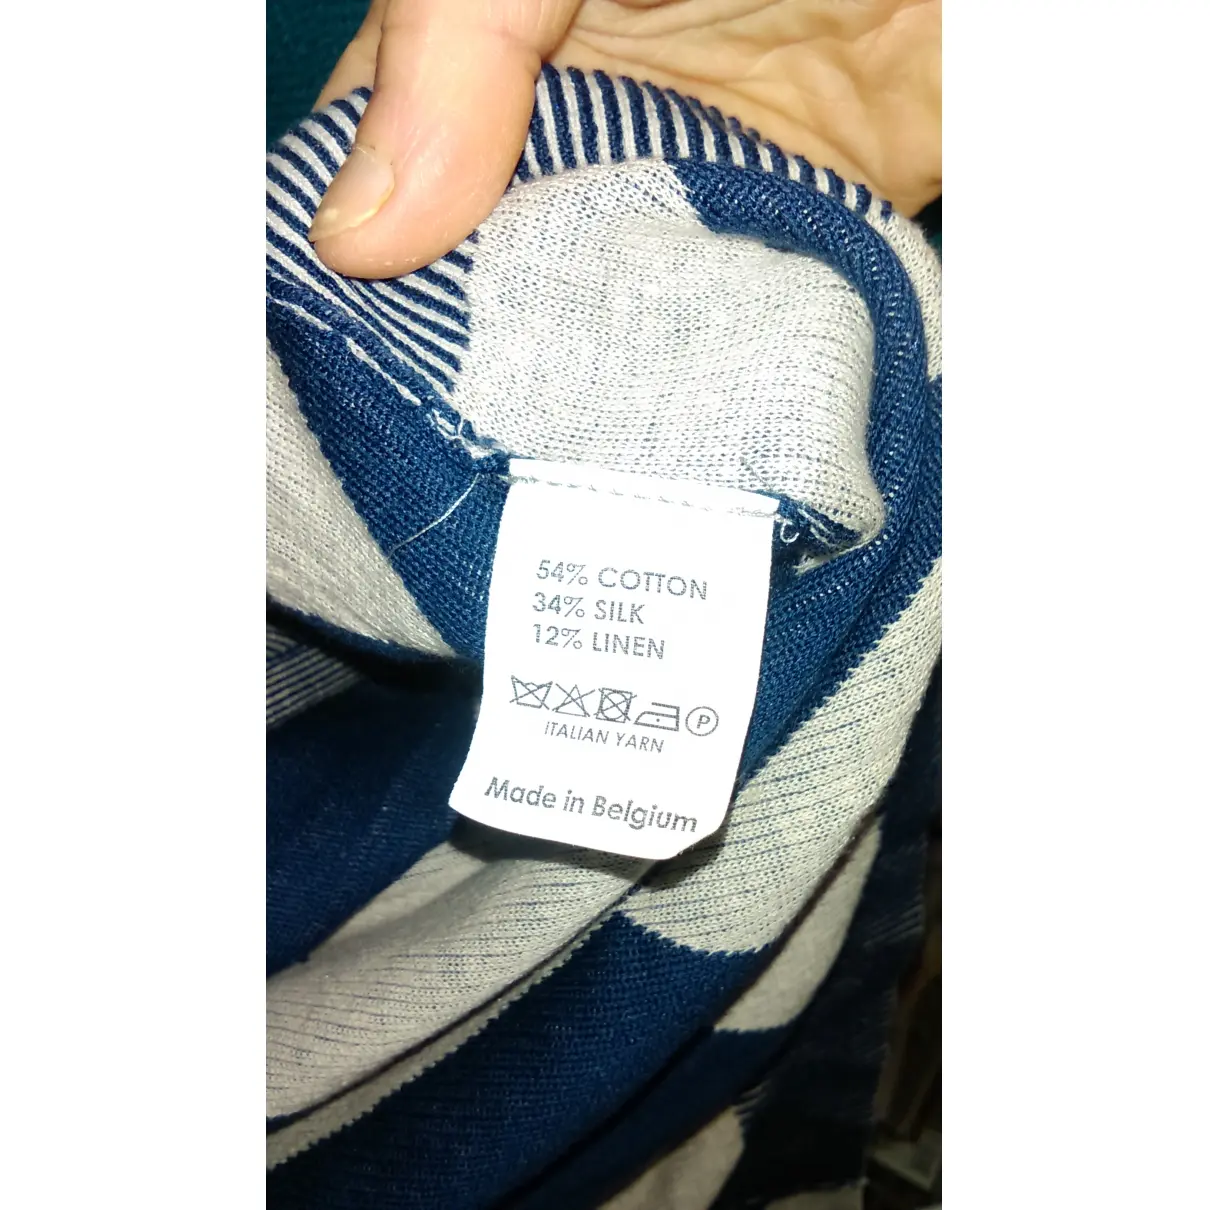 Buy Dries Van Noten Knitwear & sweatshirt online